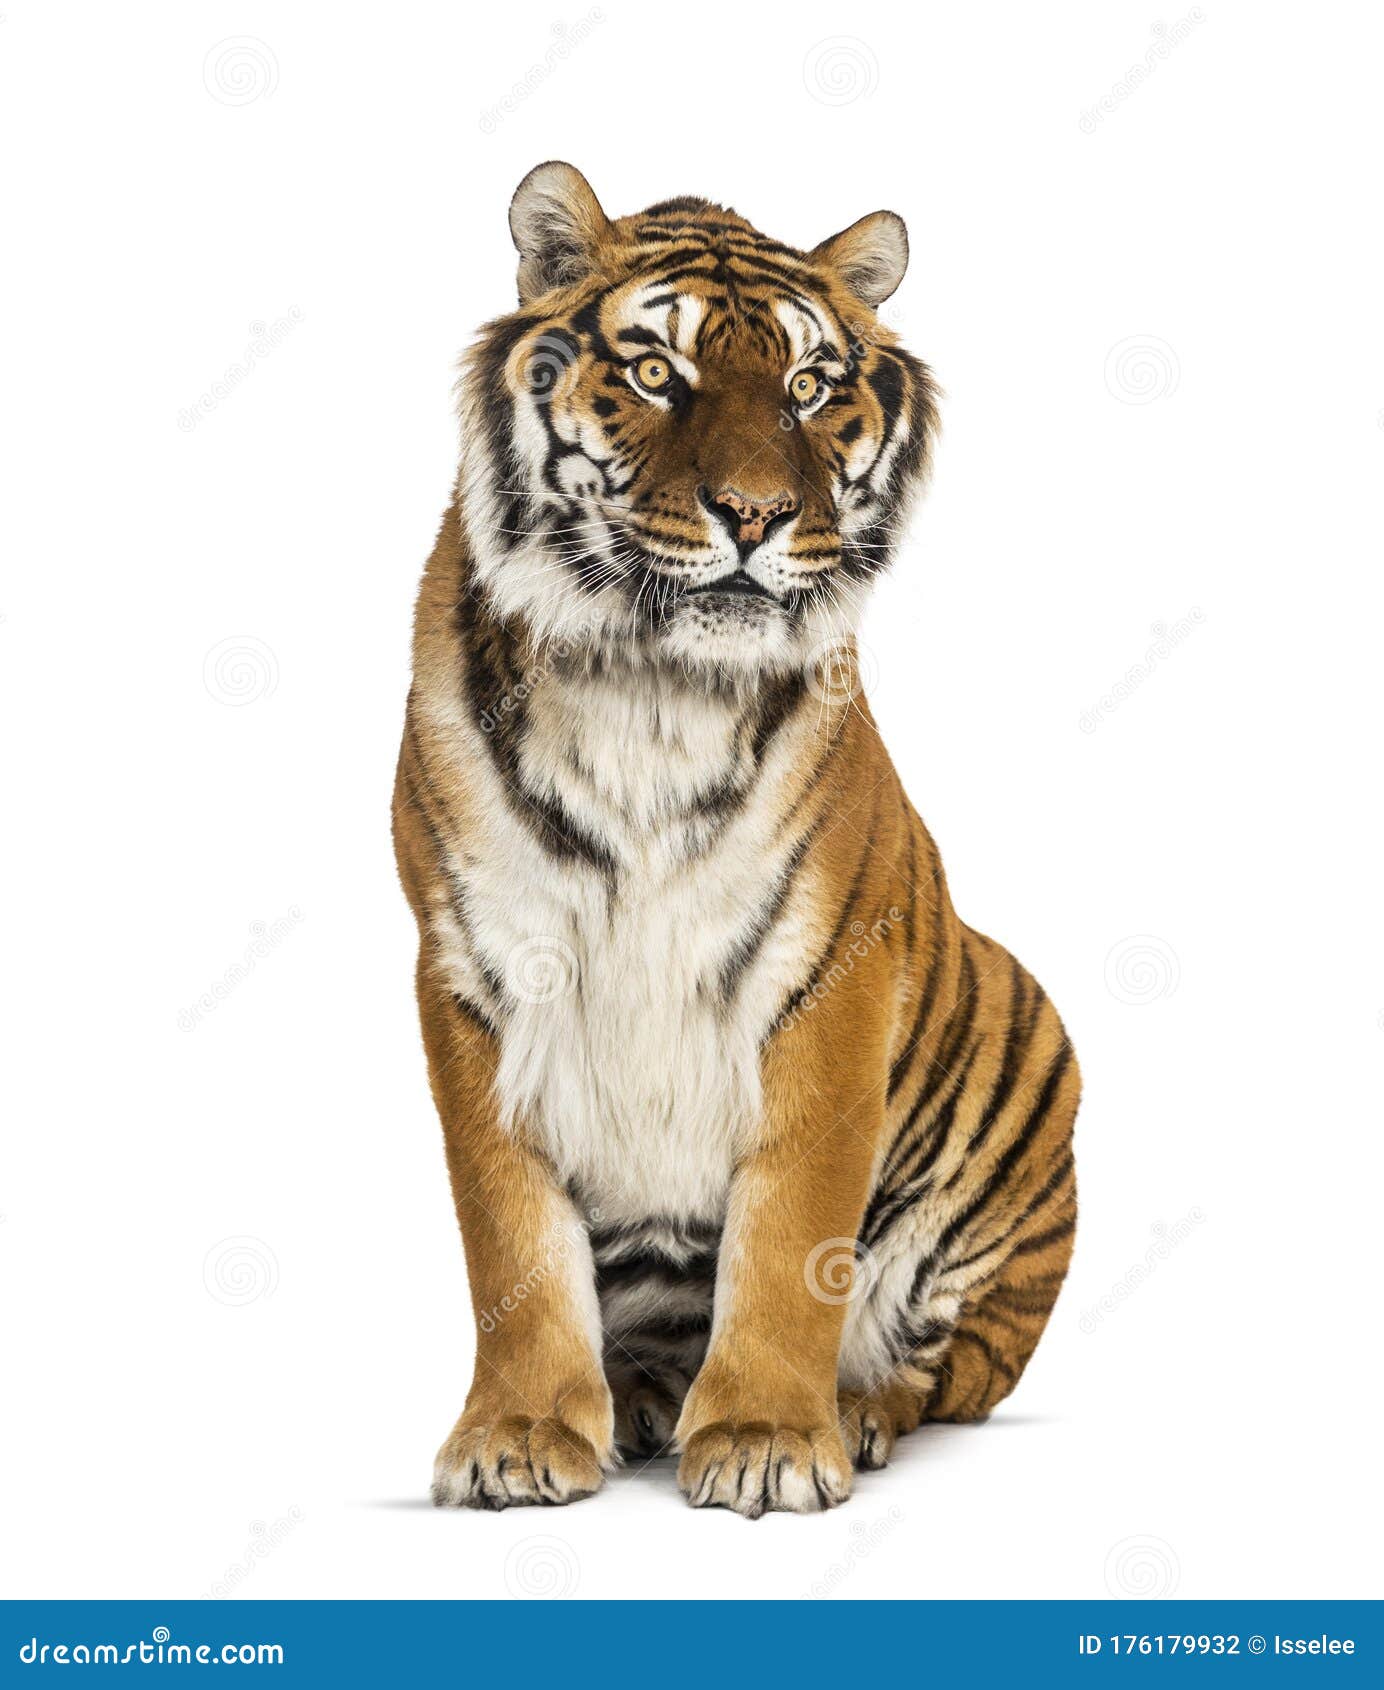 Um tigre está parado em uma sala com uma janela ao fundo.